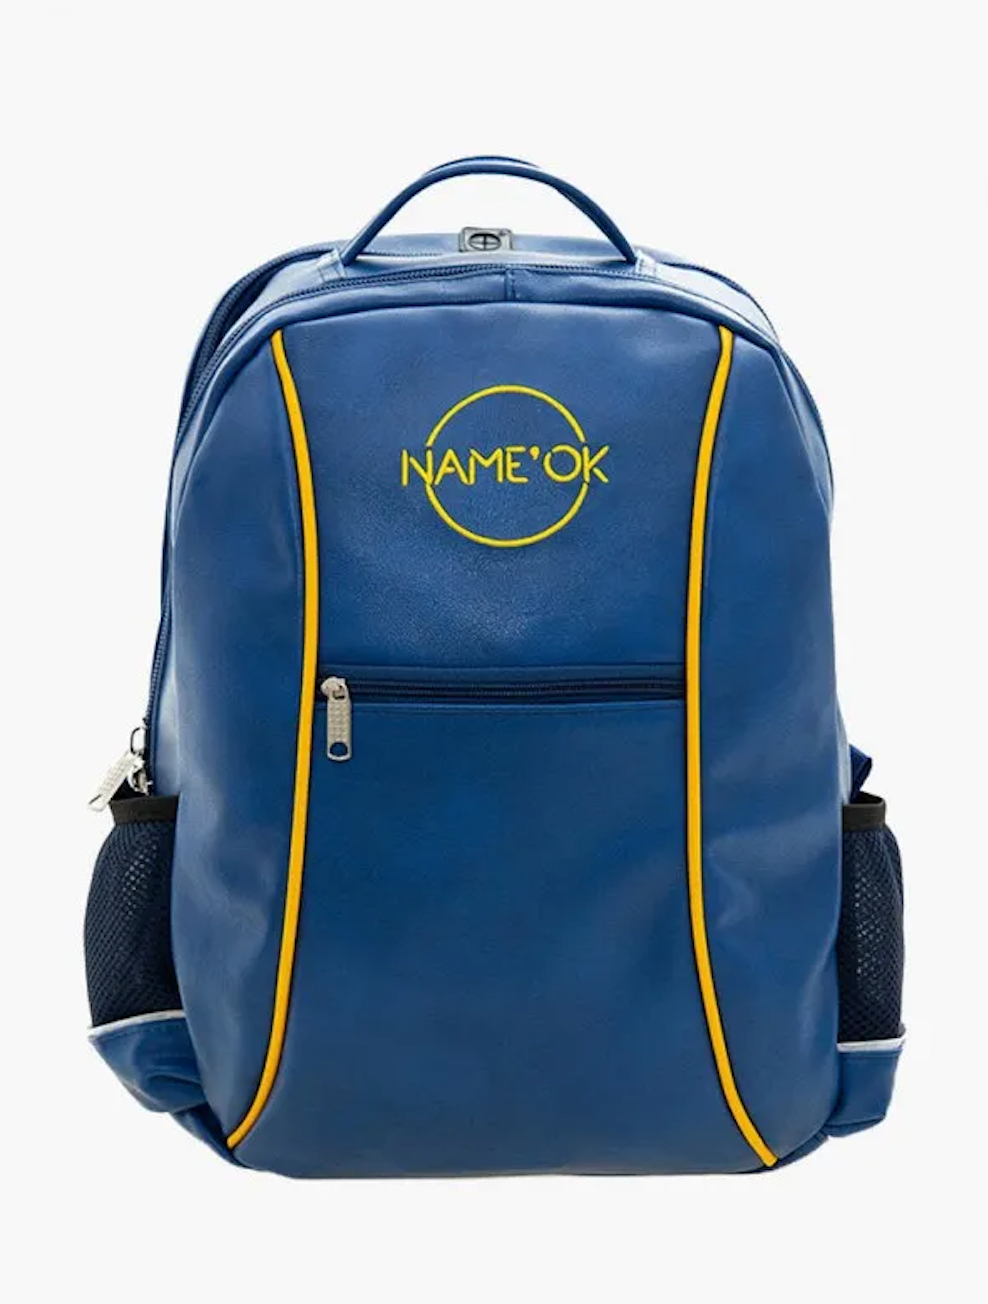 Рюкзак или ранец Подбираем идеальный вариант для вашего ребенка